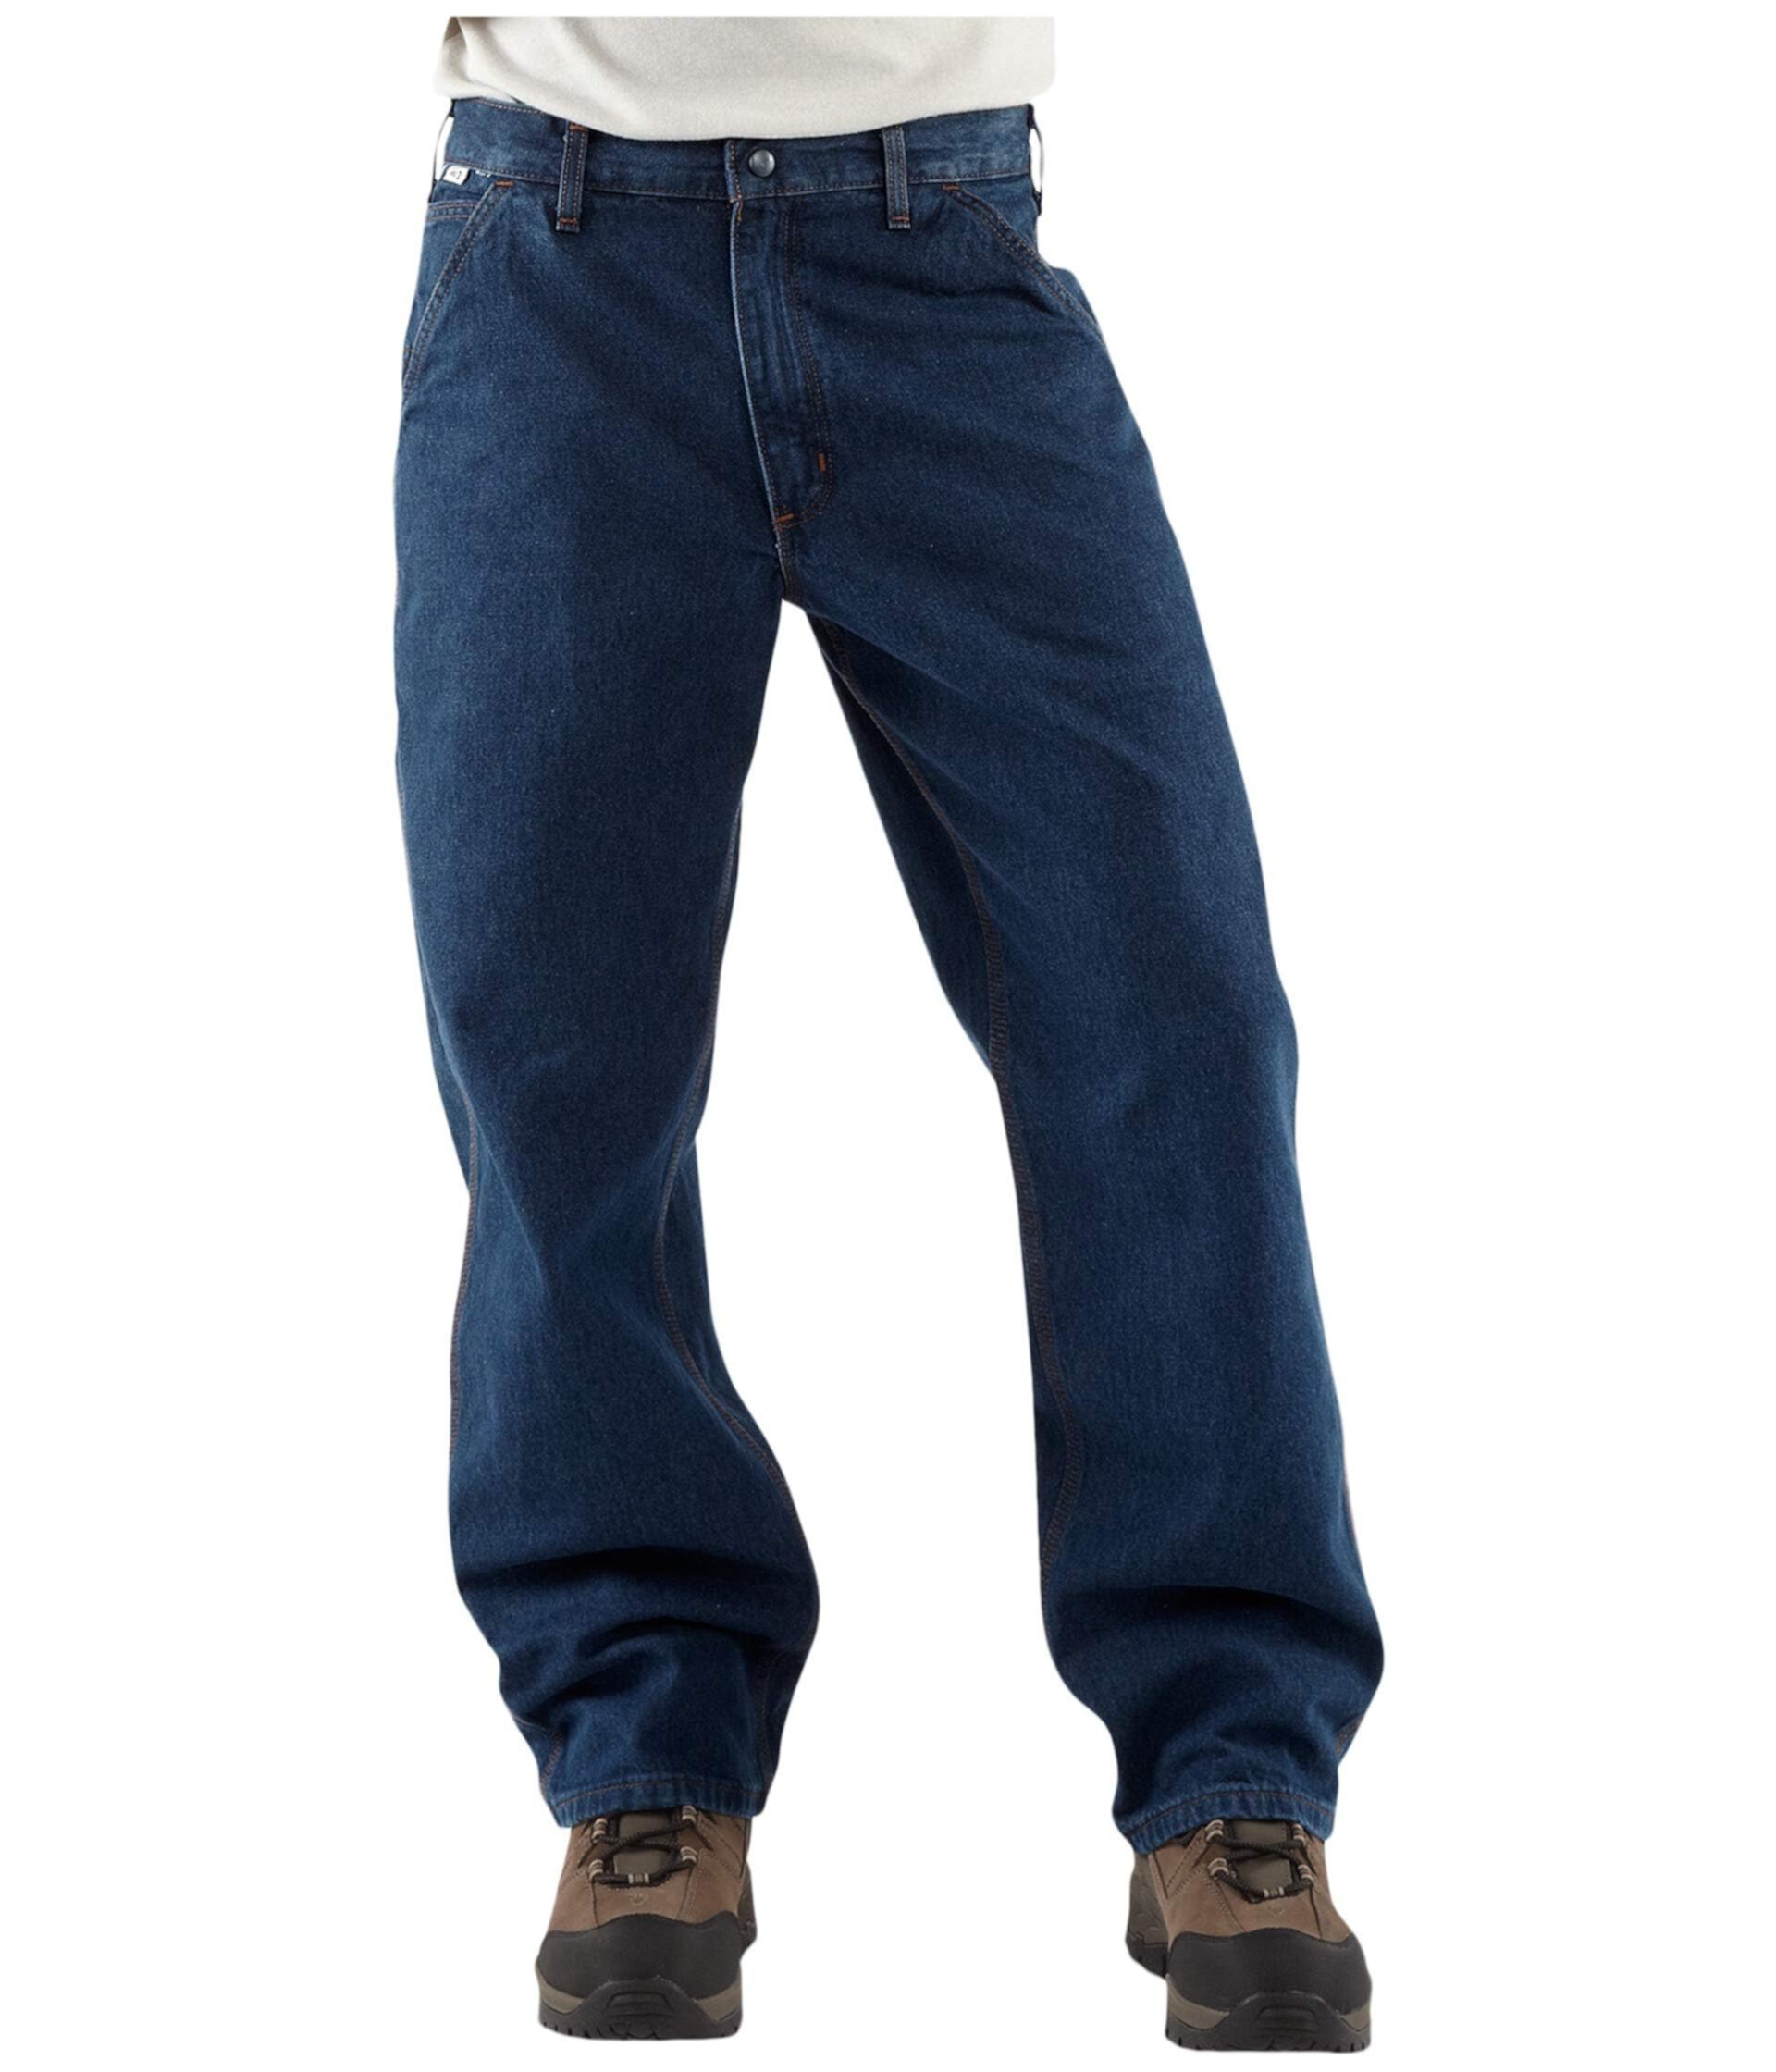 Джинсовые брюки Big&Tall Flame-Resistant Signature Denim от Carhartt для мужчин Carhartt